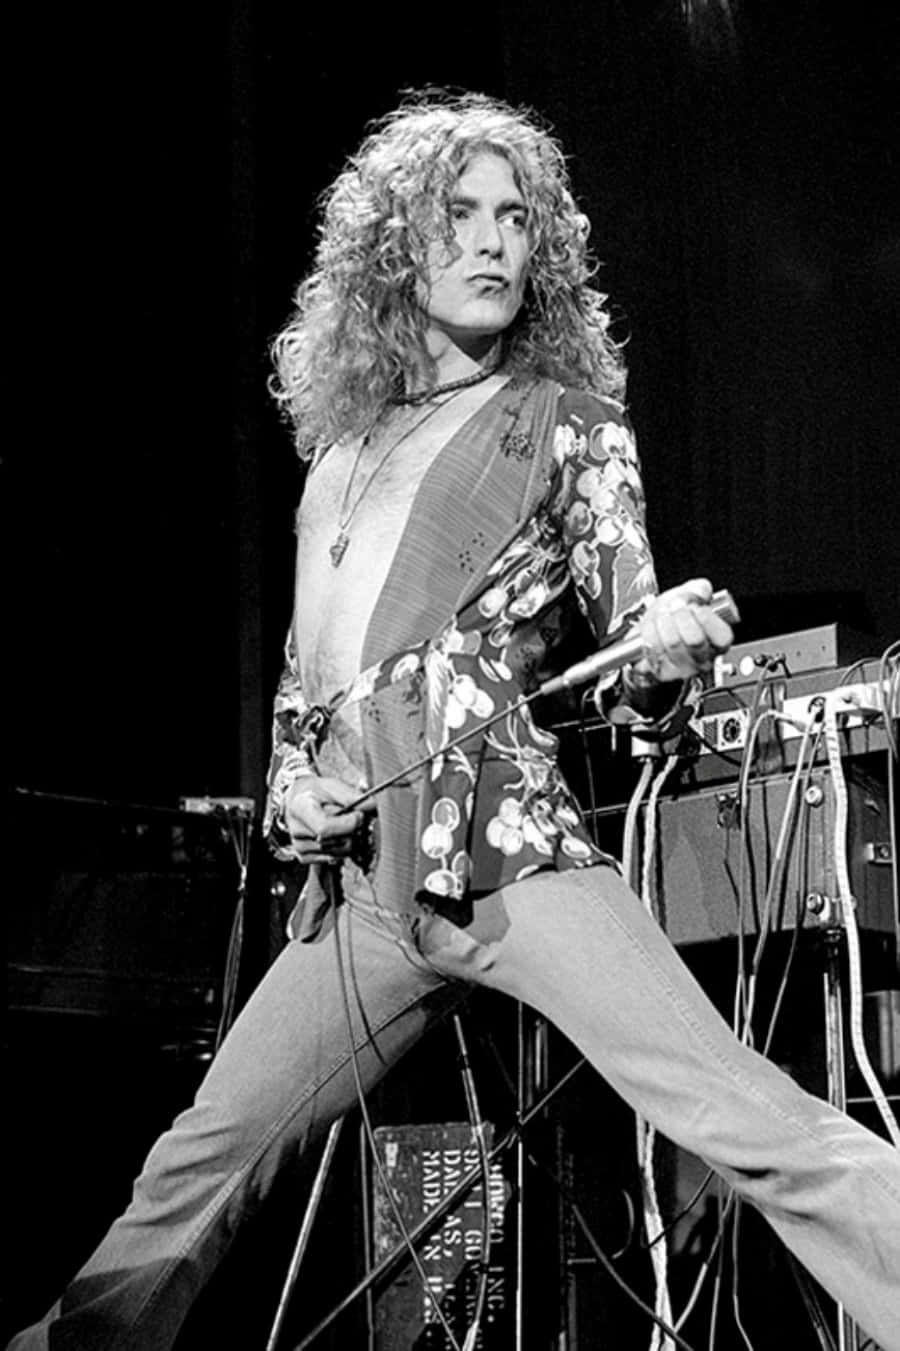 Vocalistalegendario De Rock-n-roll Robert Plant